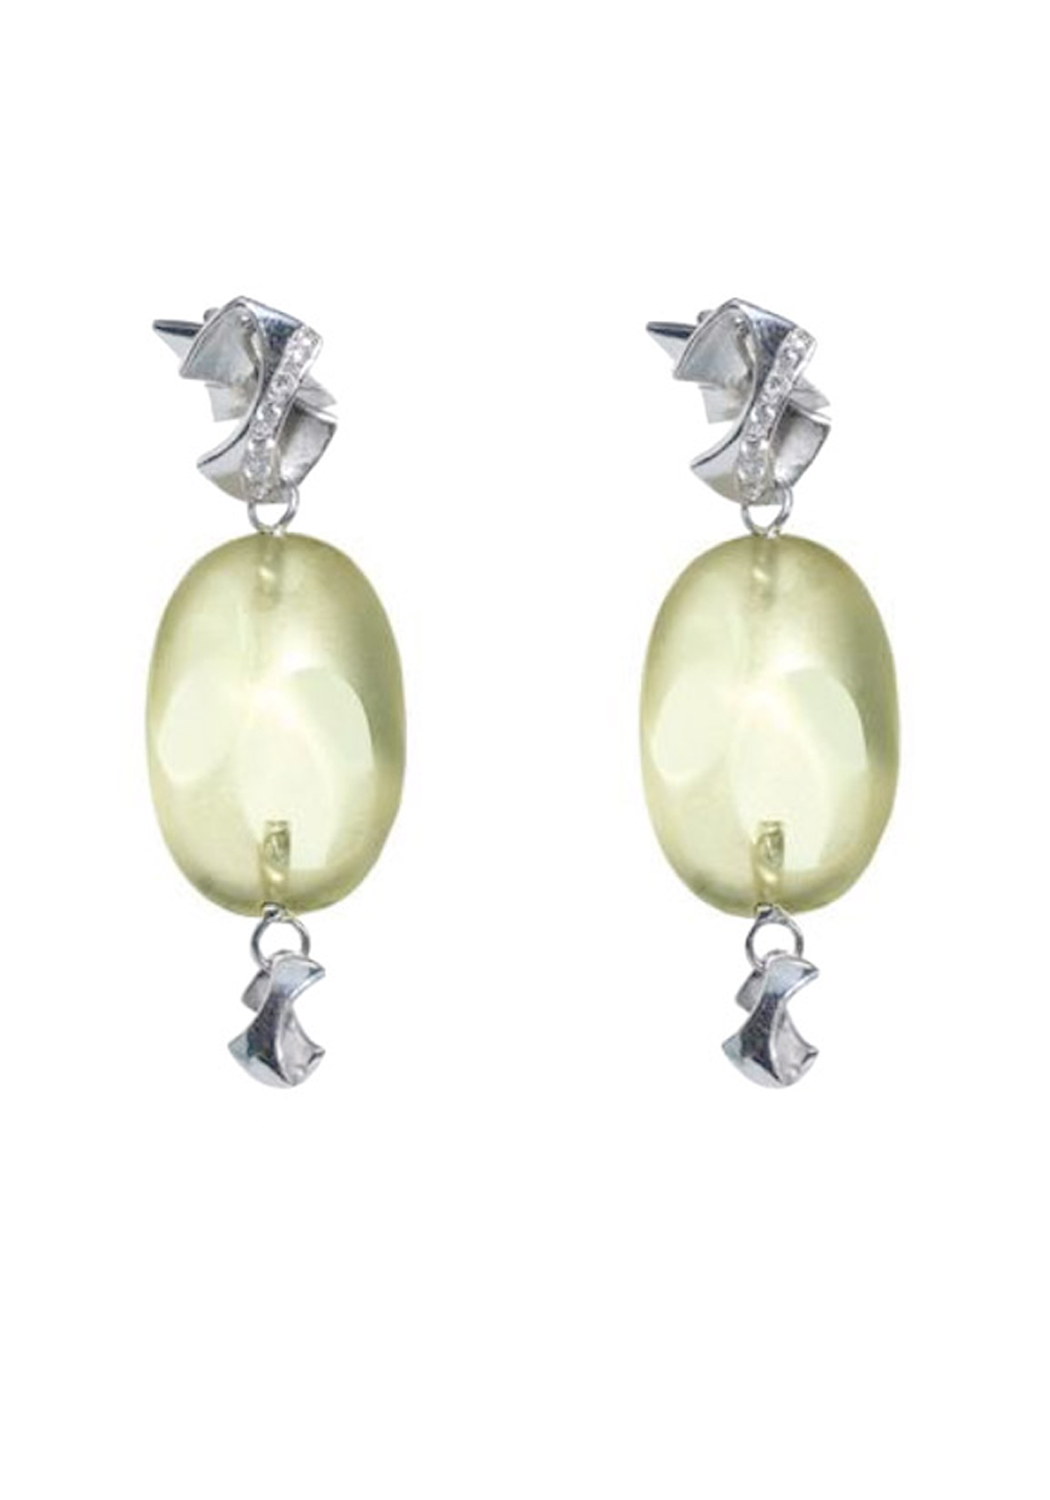 Balocchi Preziosi 18KWG Diamond & Lemon Quartz Drop Earrings | OsterJewelers.com